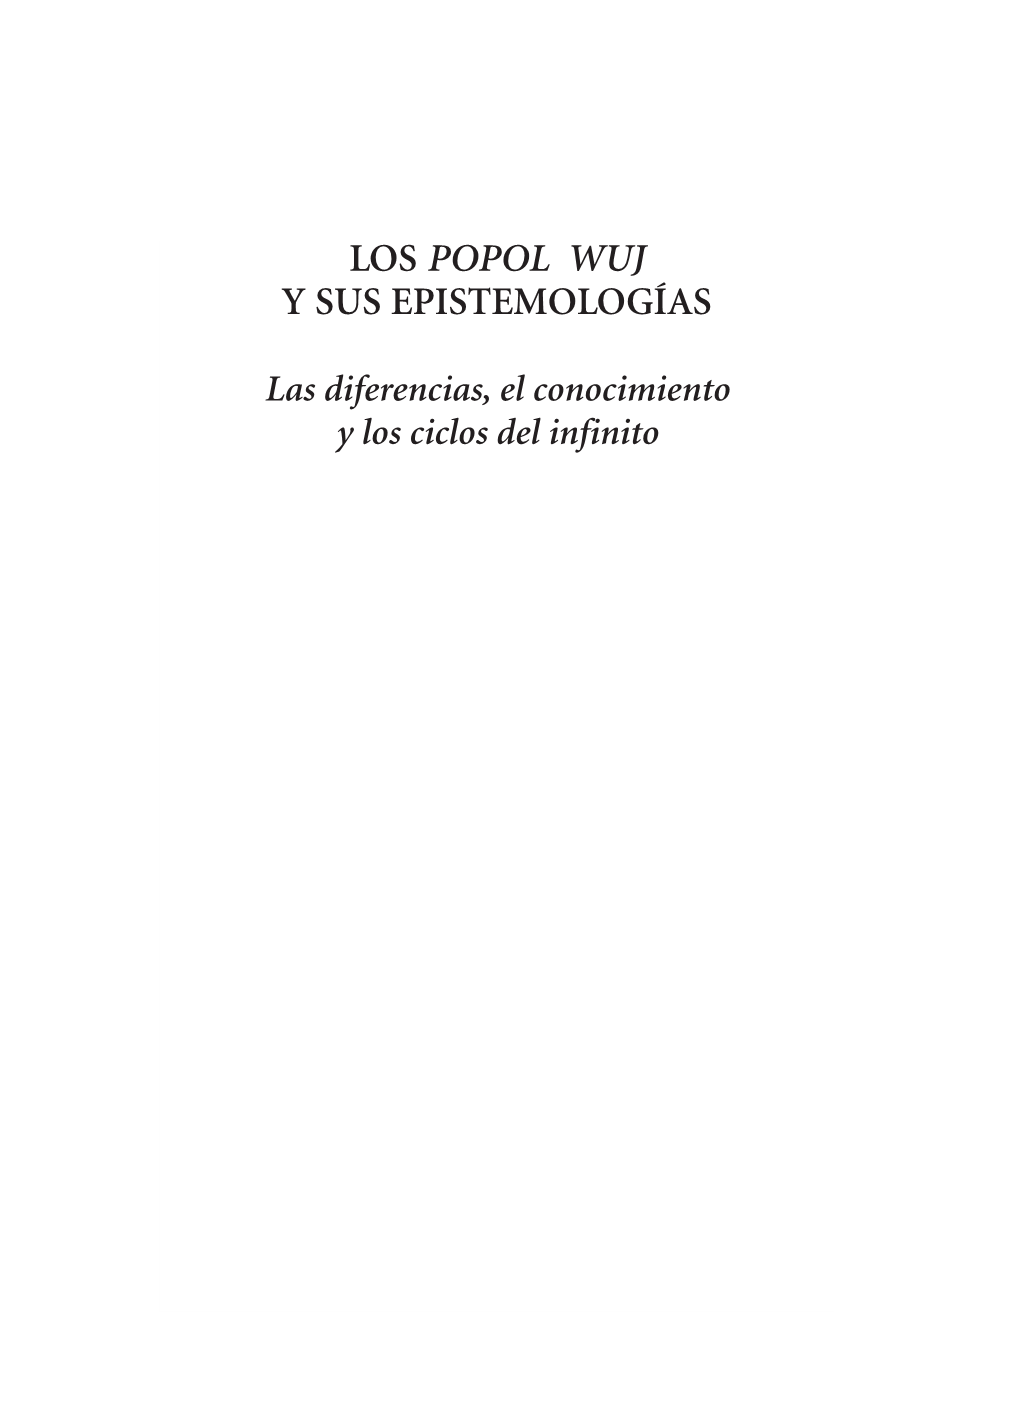 Los Popol Wuj Y Sus Epistemologías